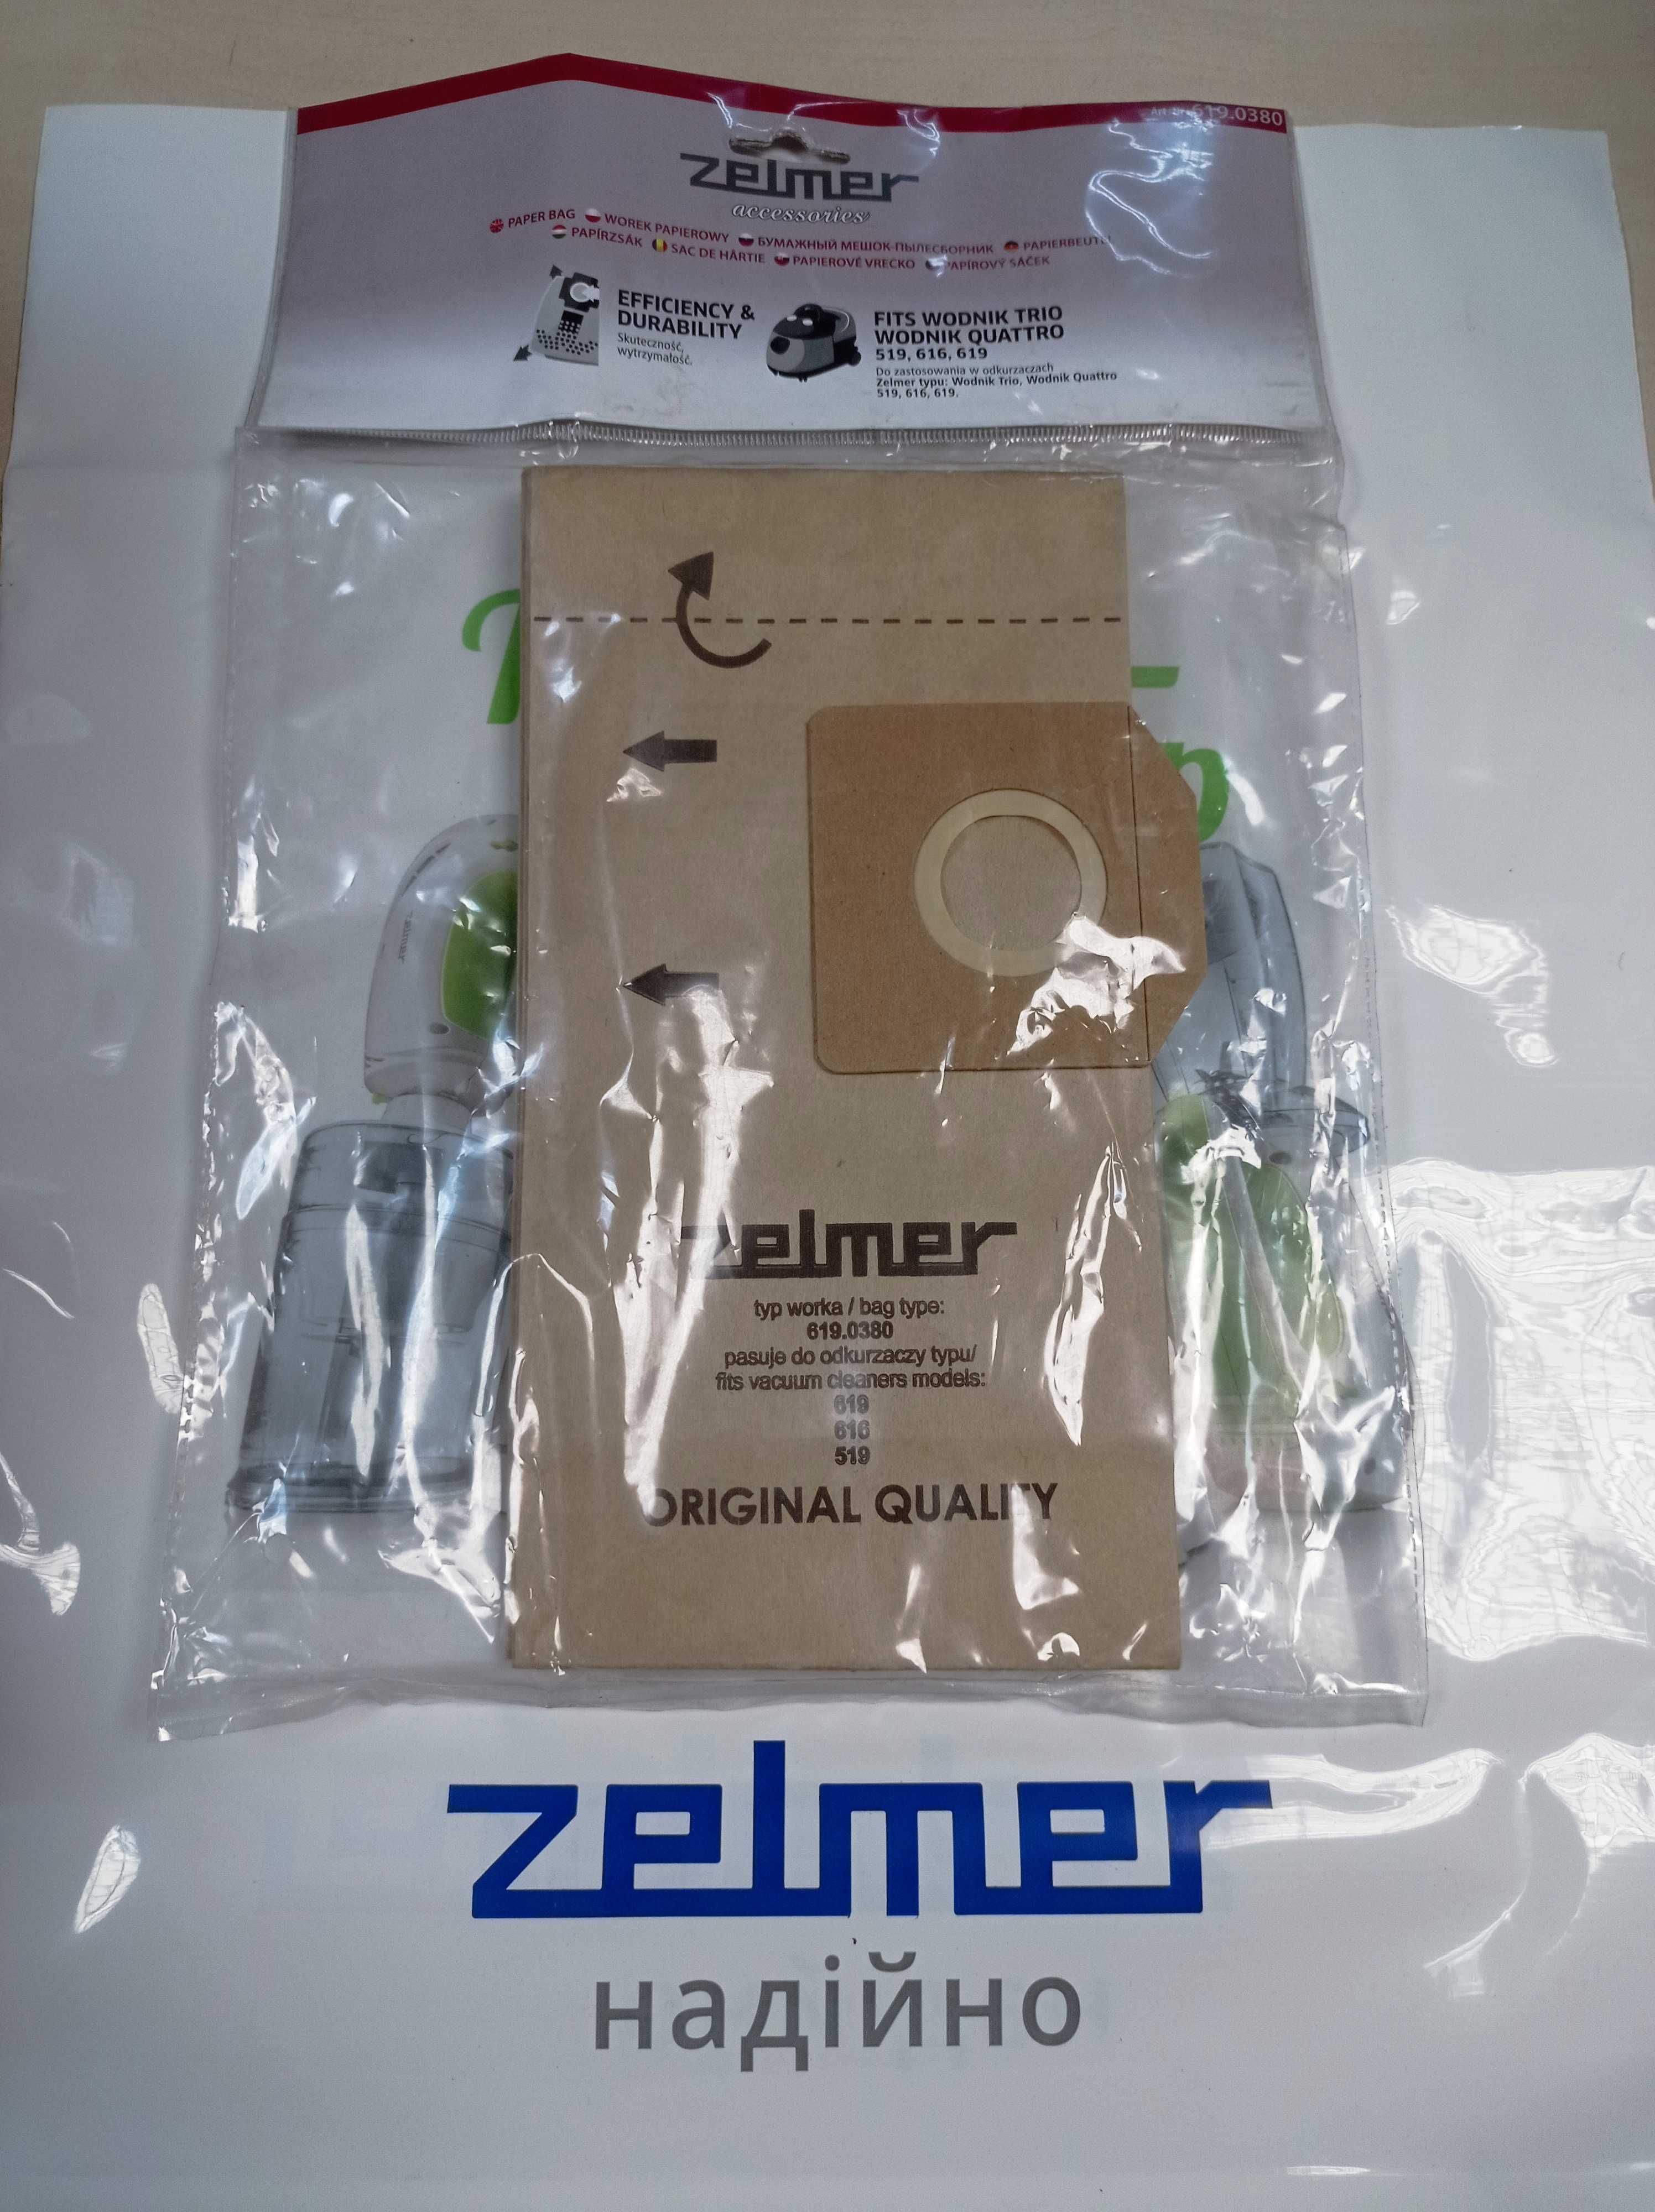 Набор мешков для пылесоса Zelmer 12000742 (619.0380)